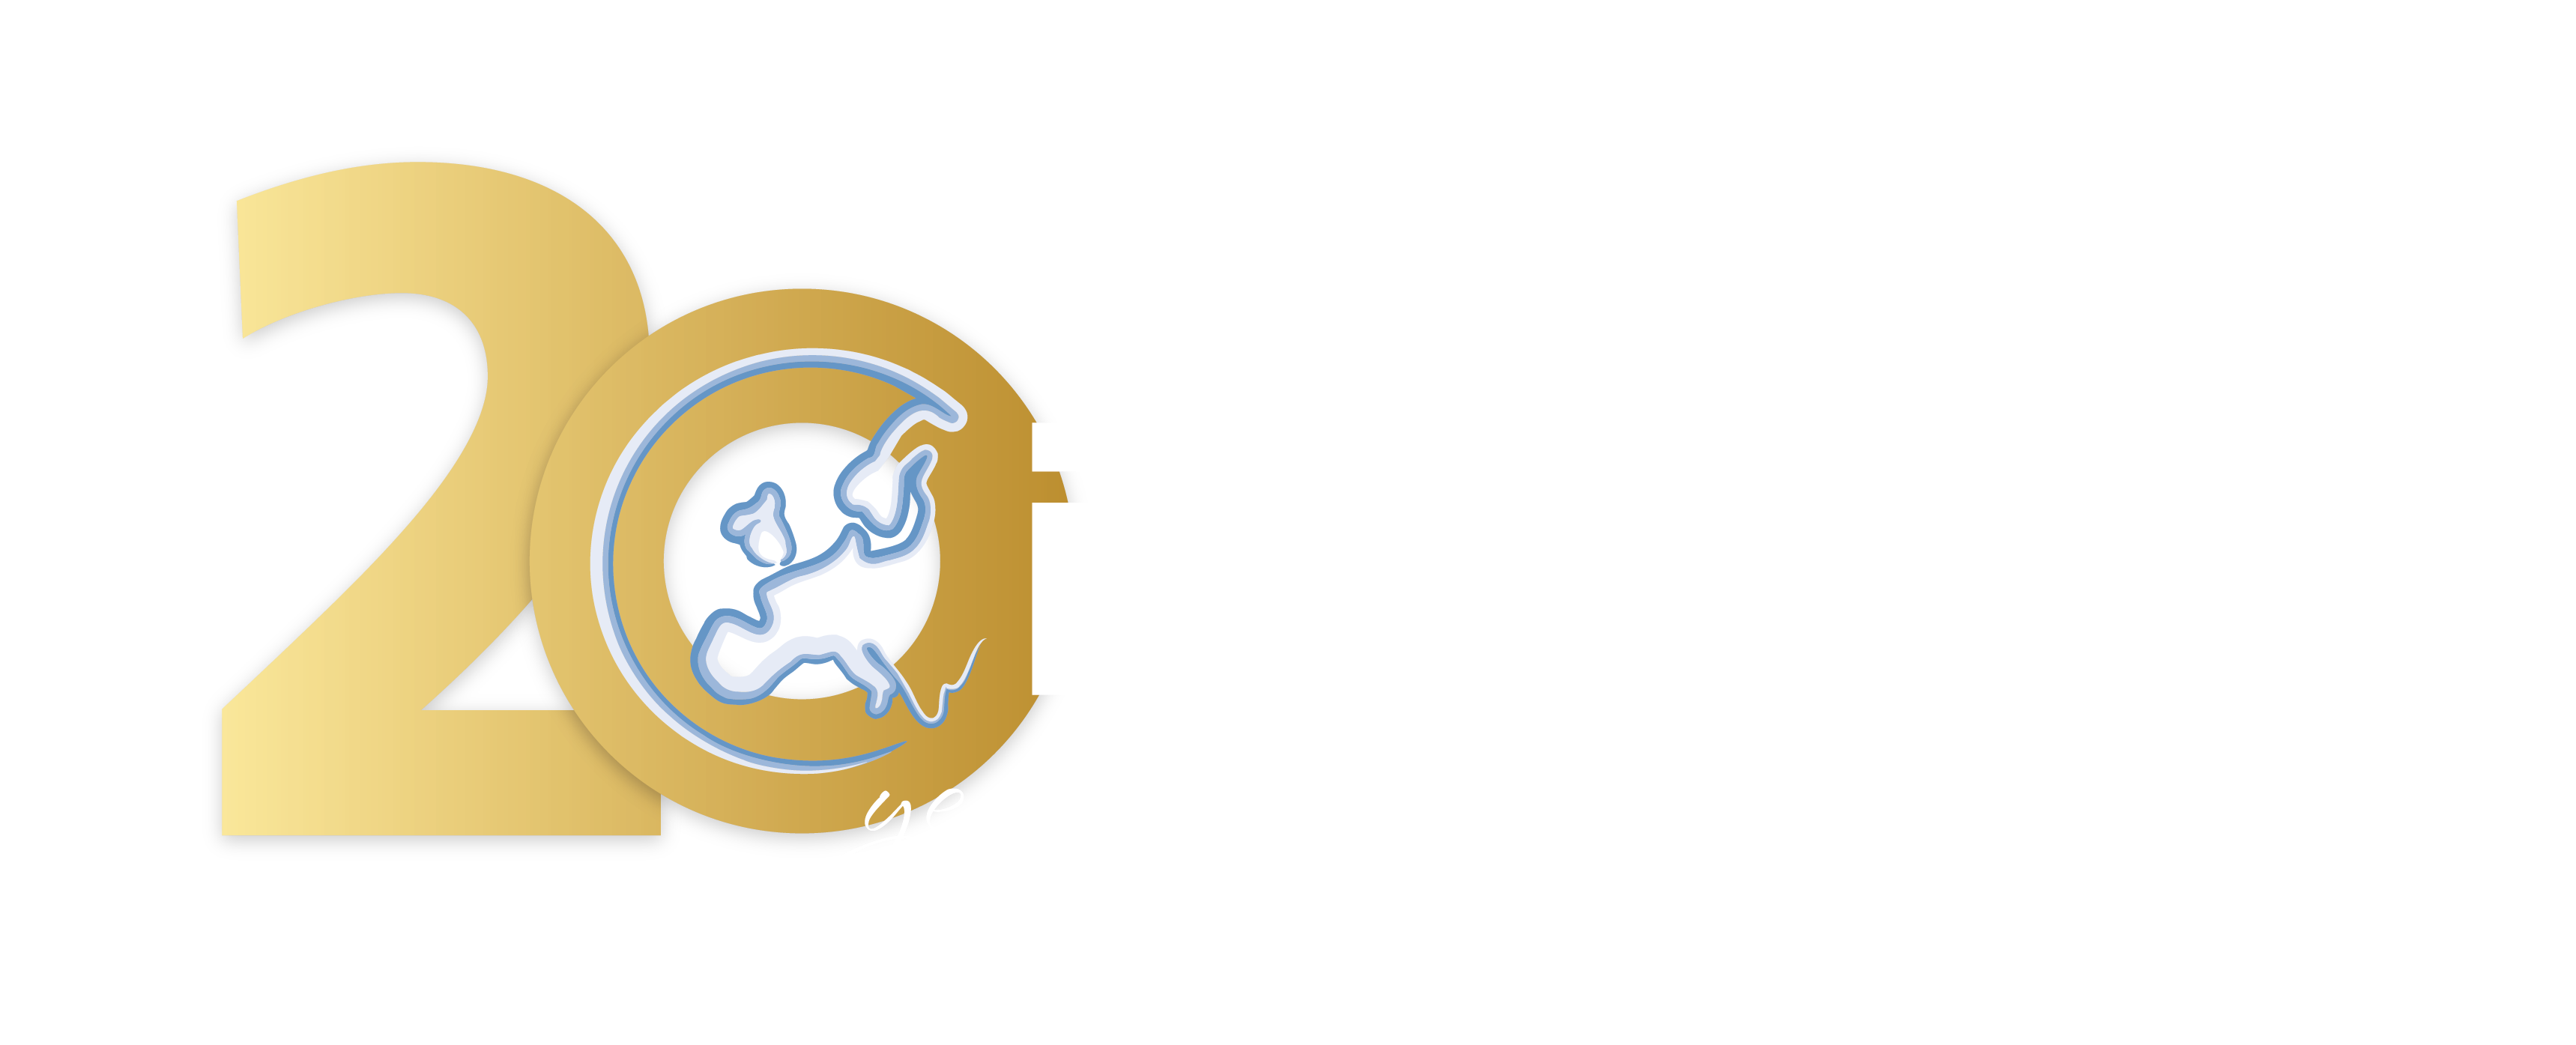 INCOMA's 20th anniversary